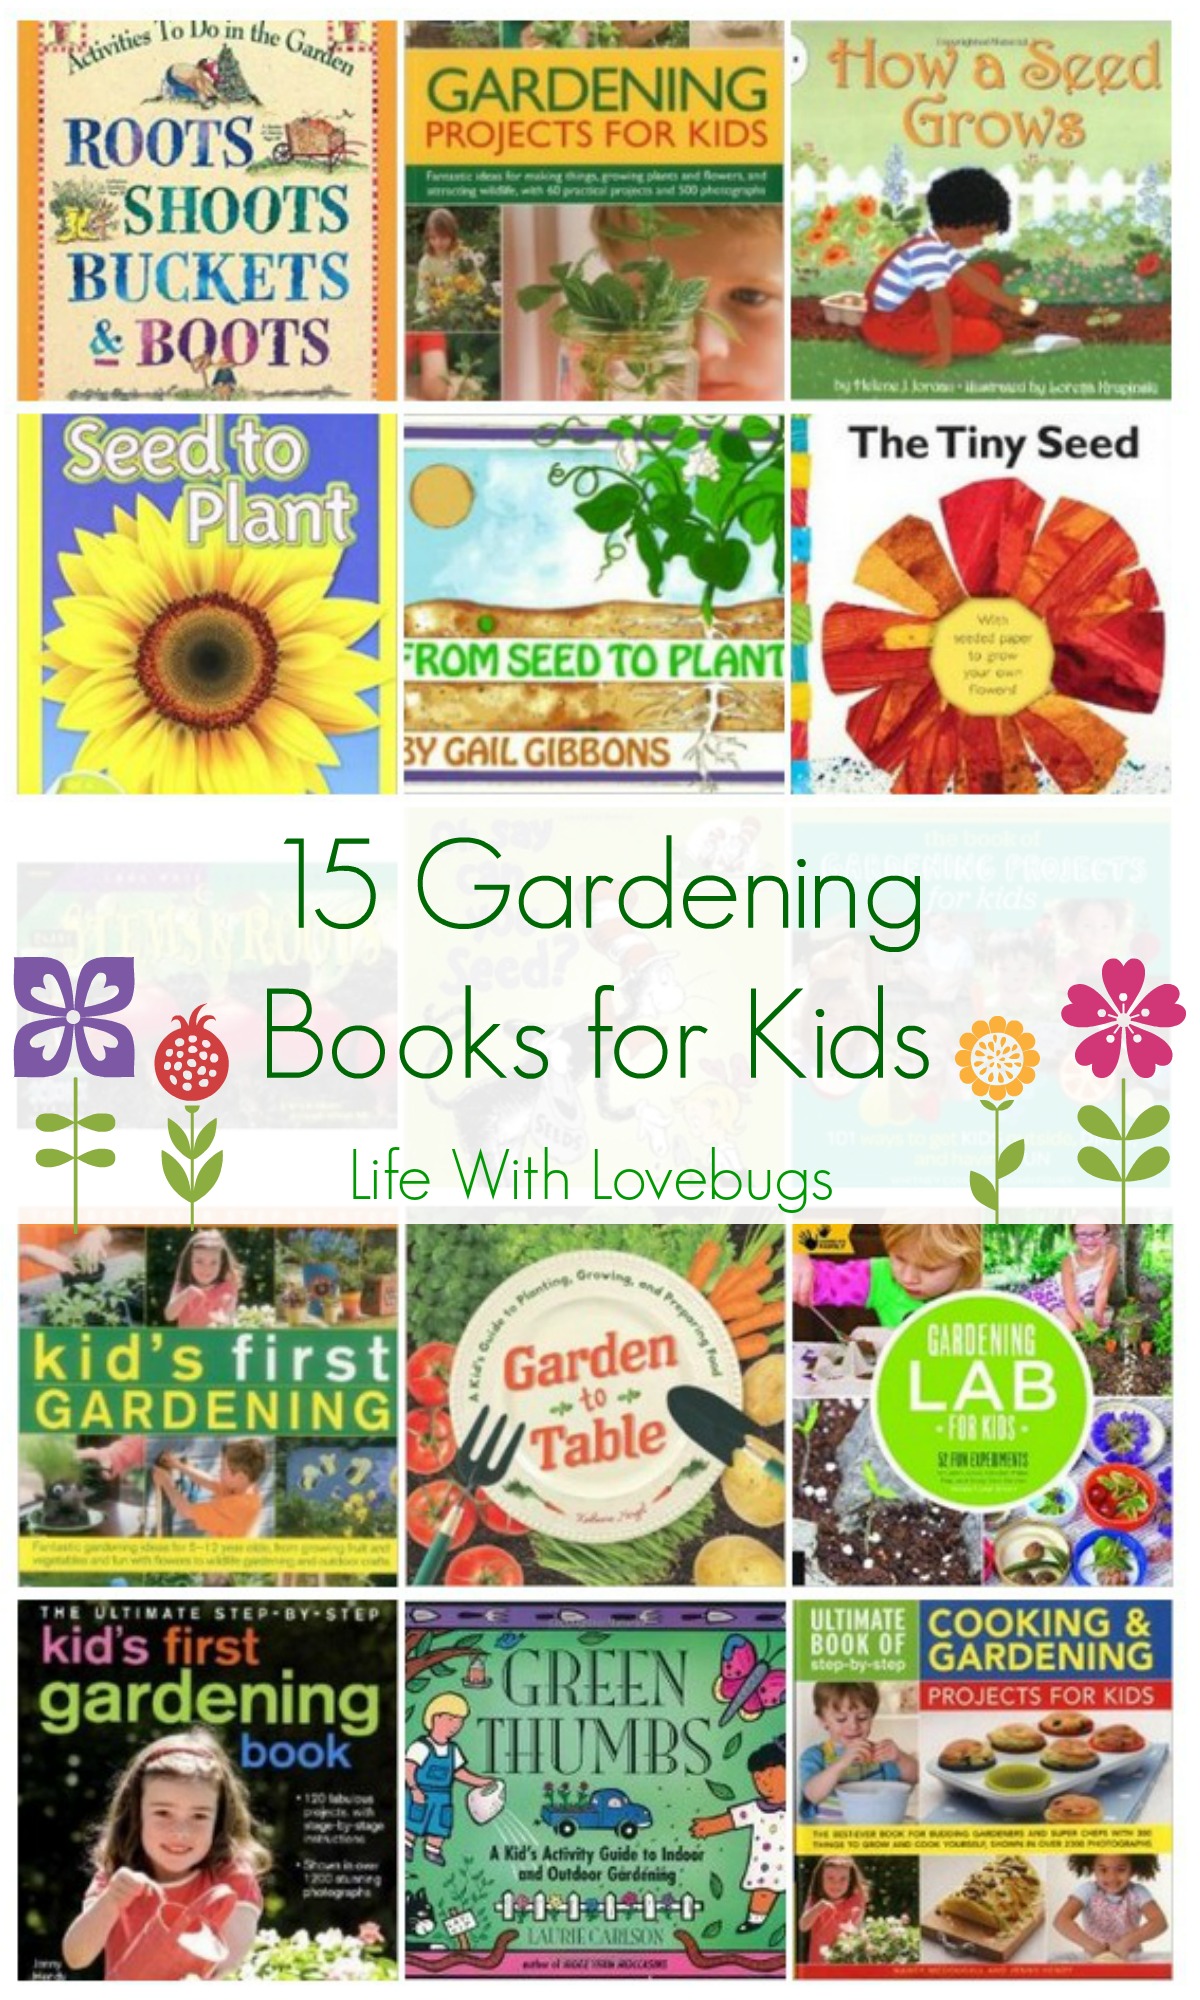 15 Gardening Books for Kids